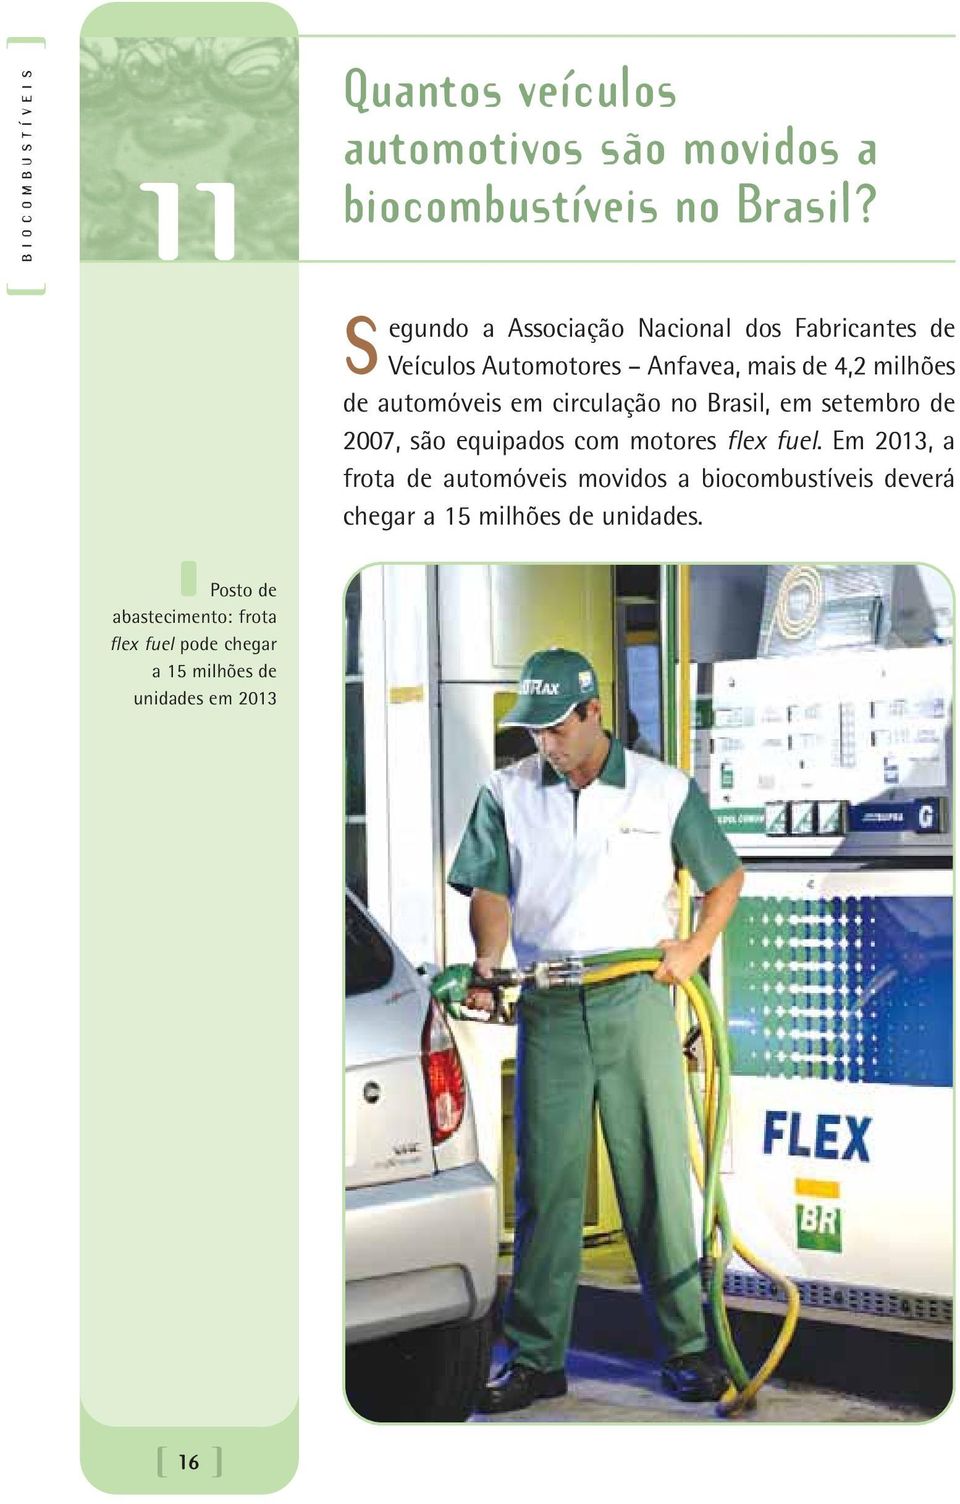 automóveis em circulação no Brasil, em setembro de 2007, são equipados com motores flex fuel.